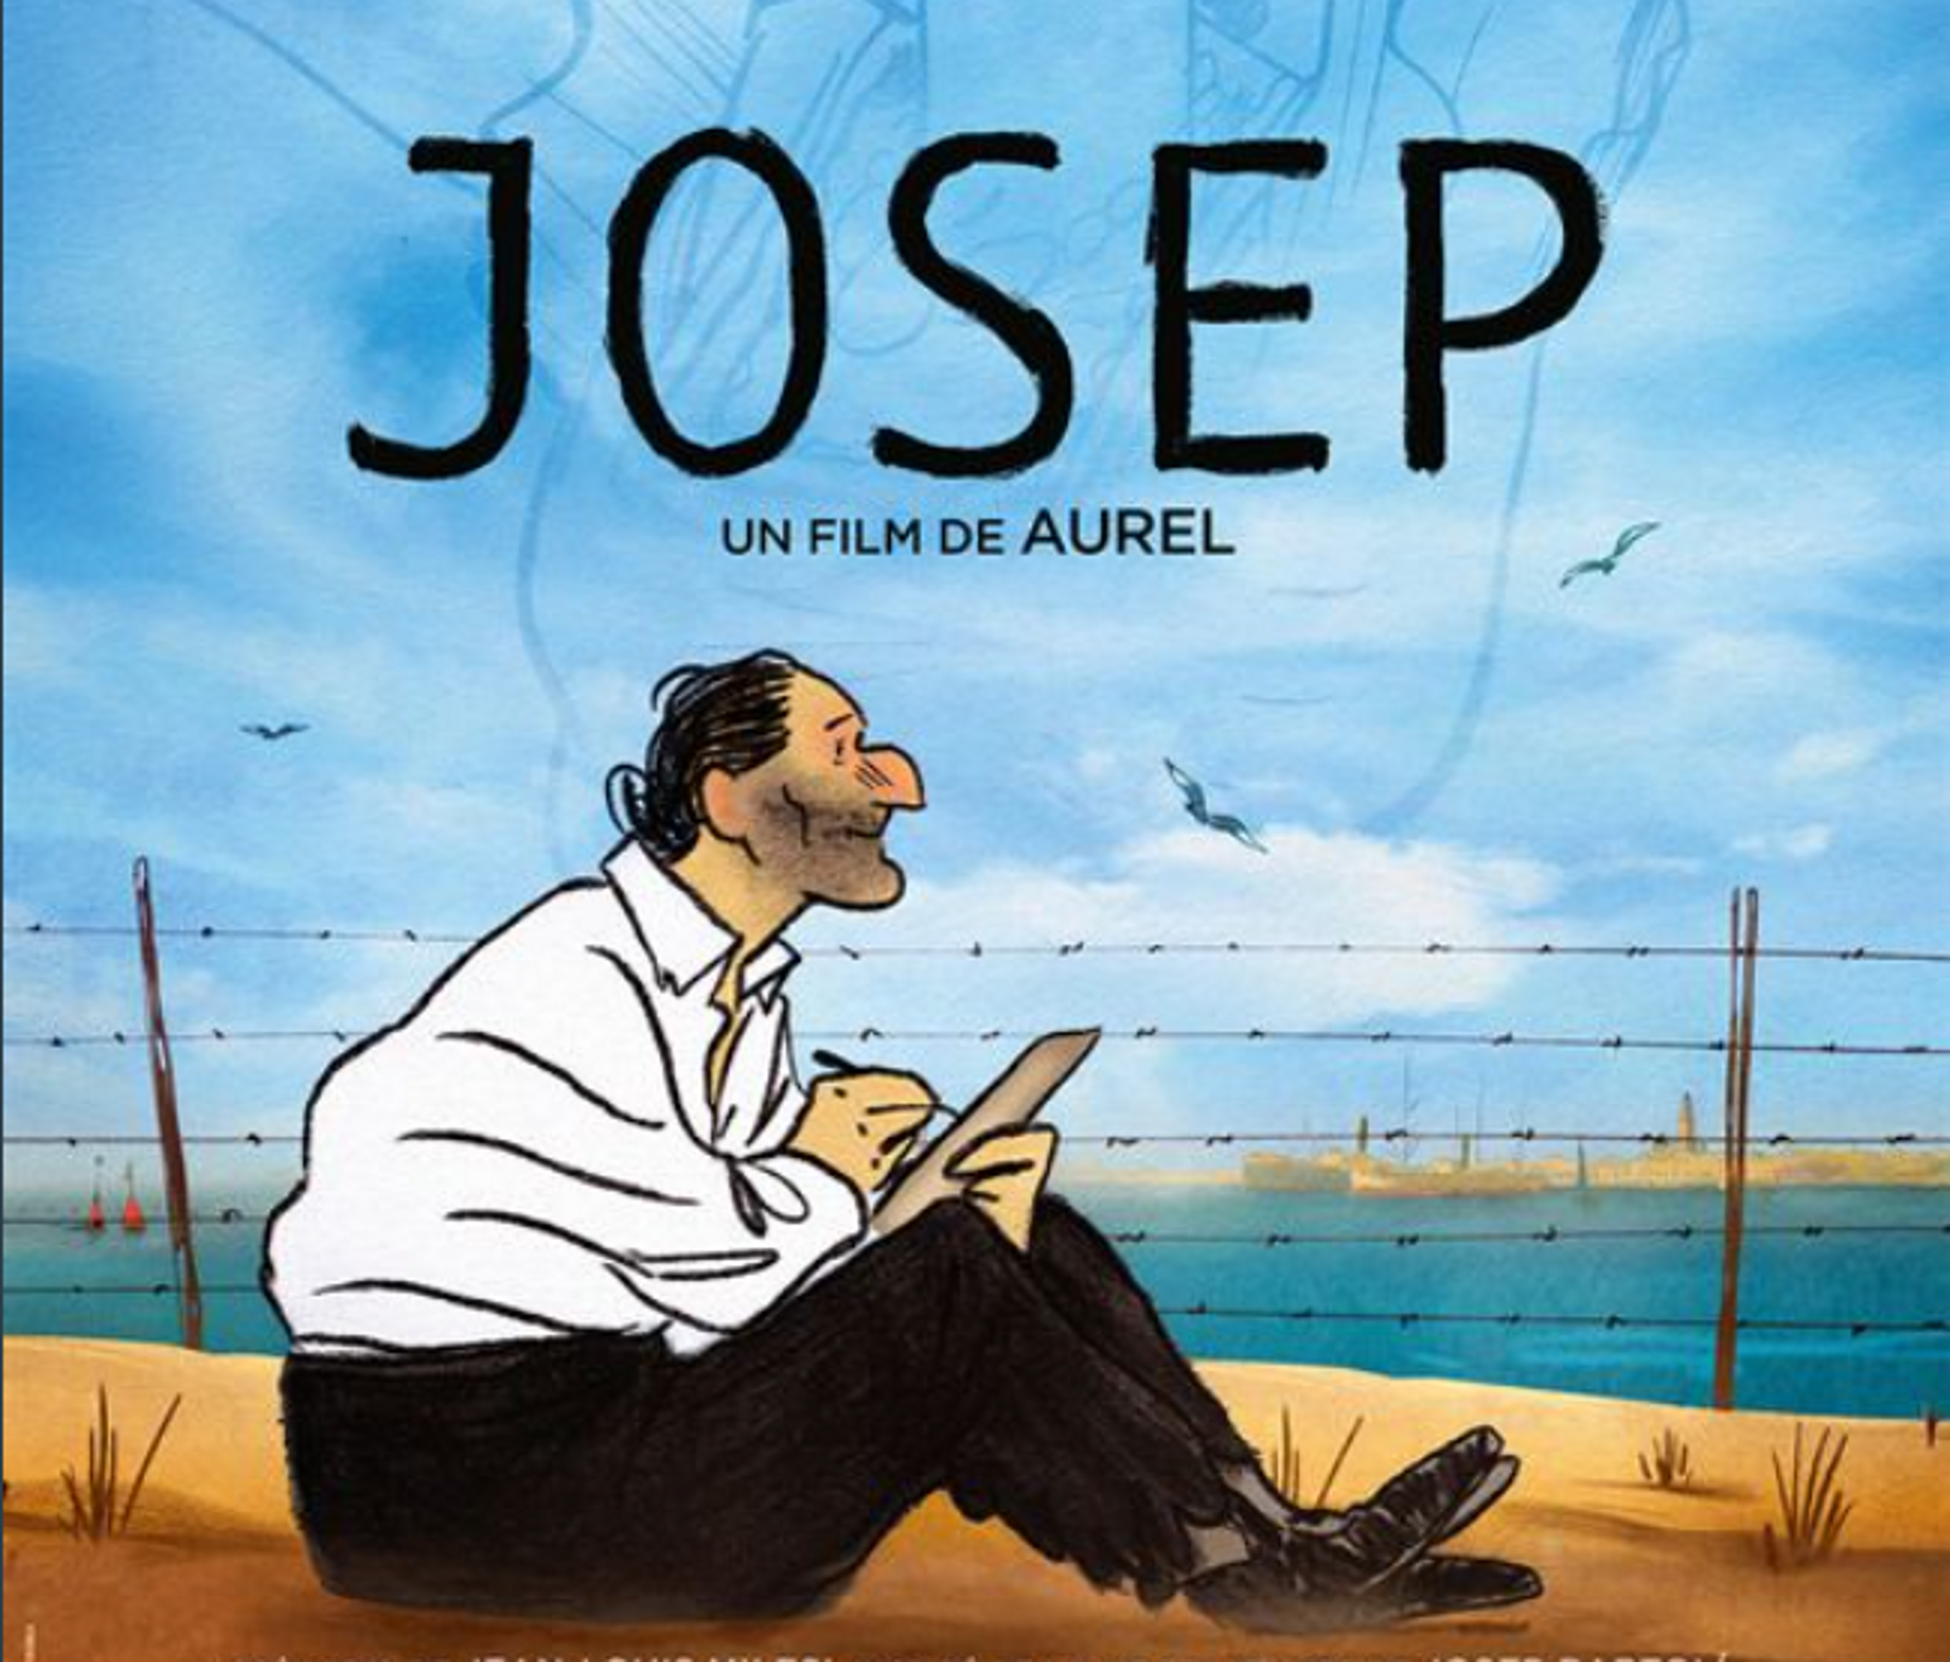 La producció franco-catalana 'Josep' guanya el Cèsar al millor film d'animació